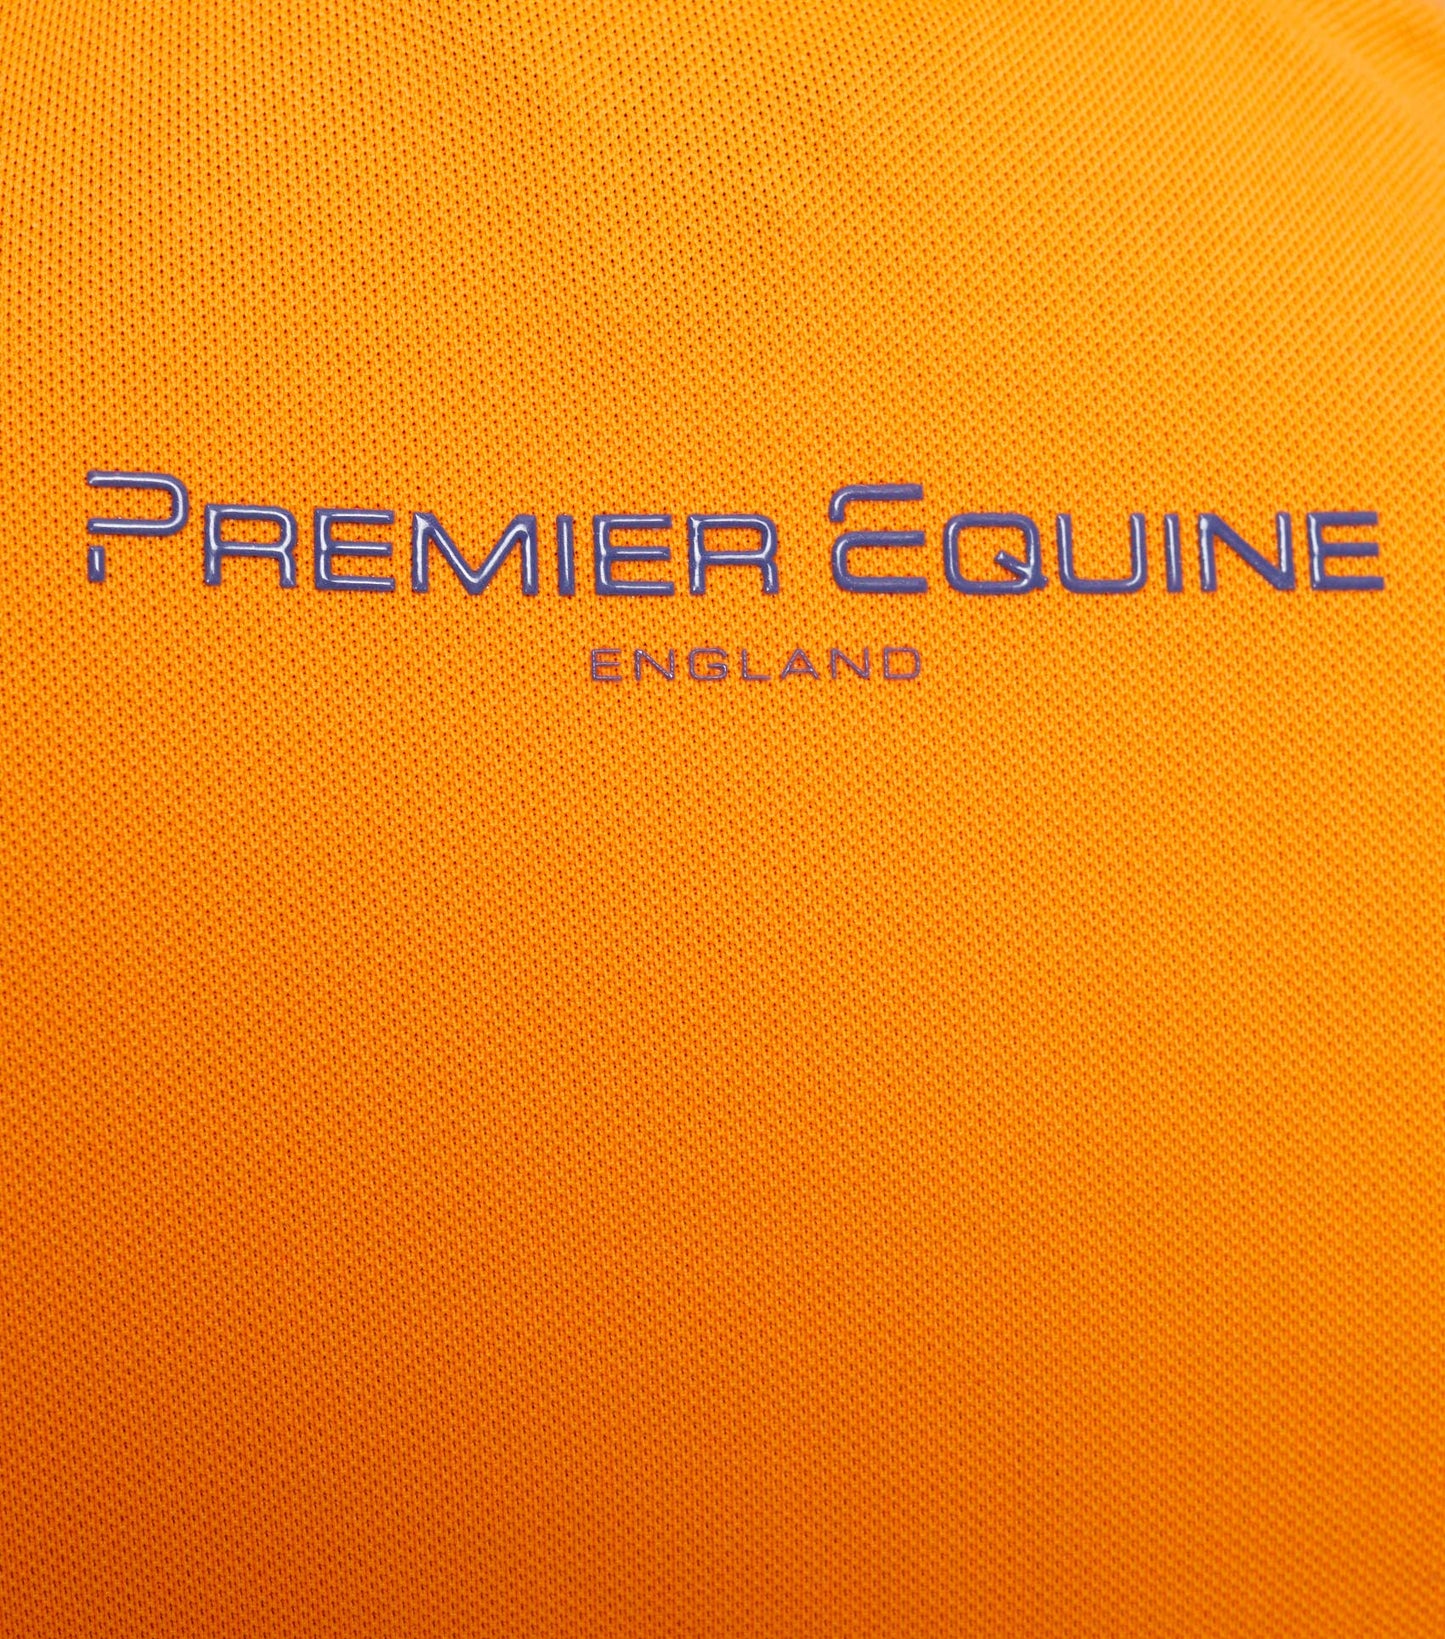 Premier Equine Cisco Kids Polo Shirt (Boys and girls)